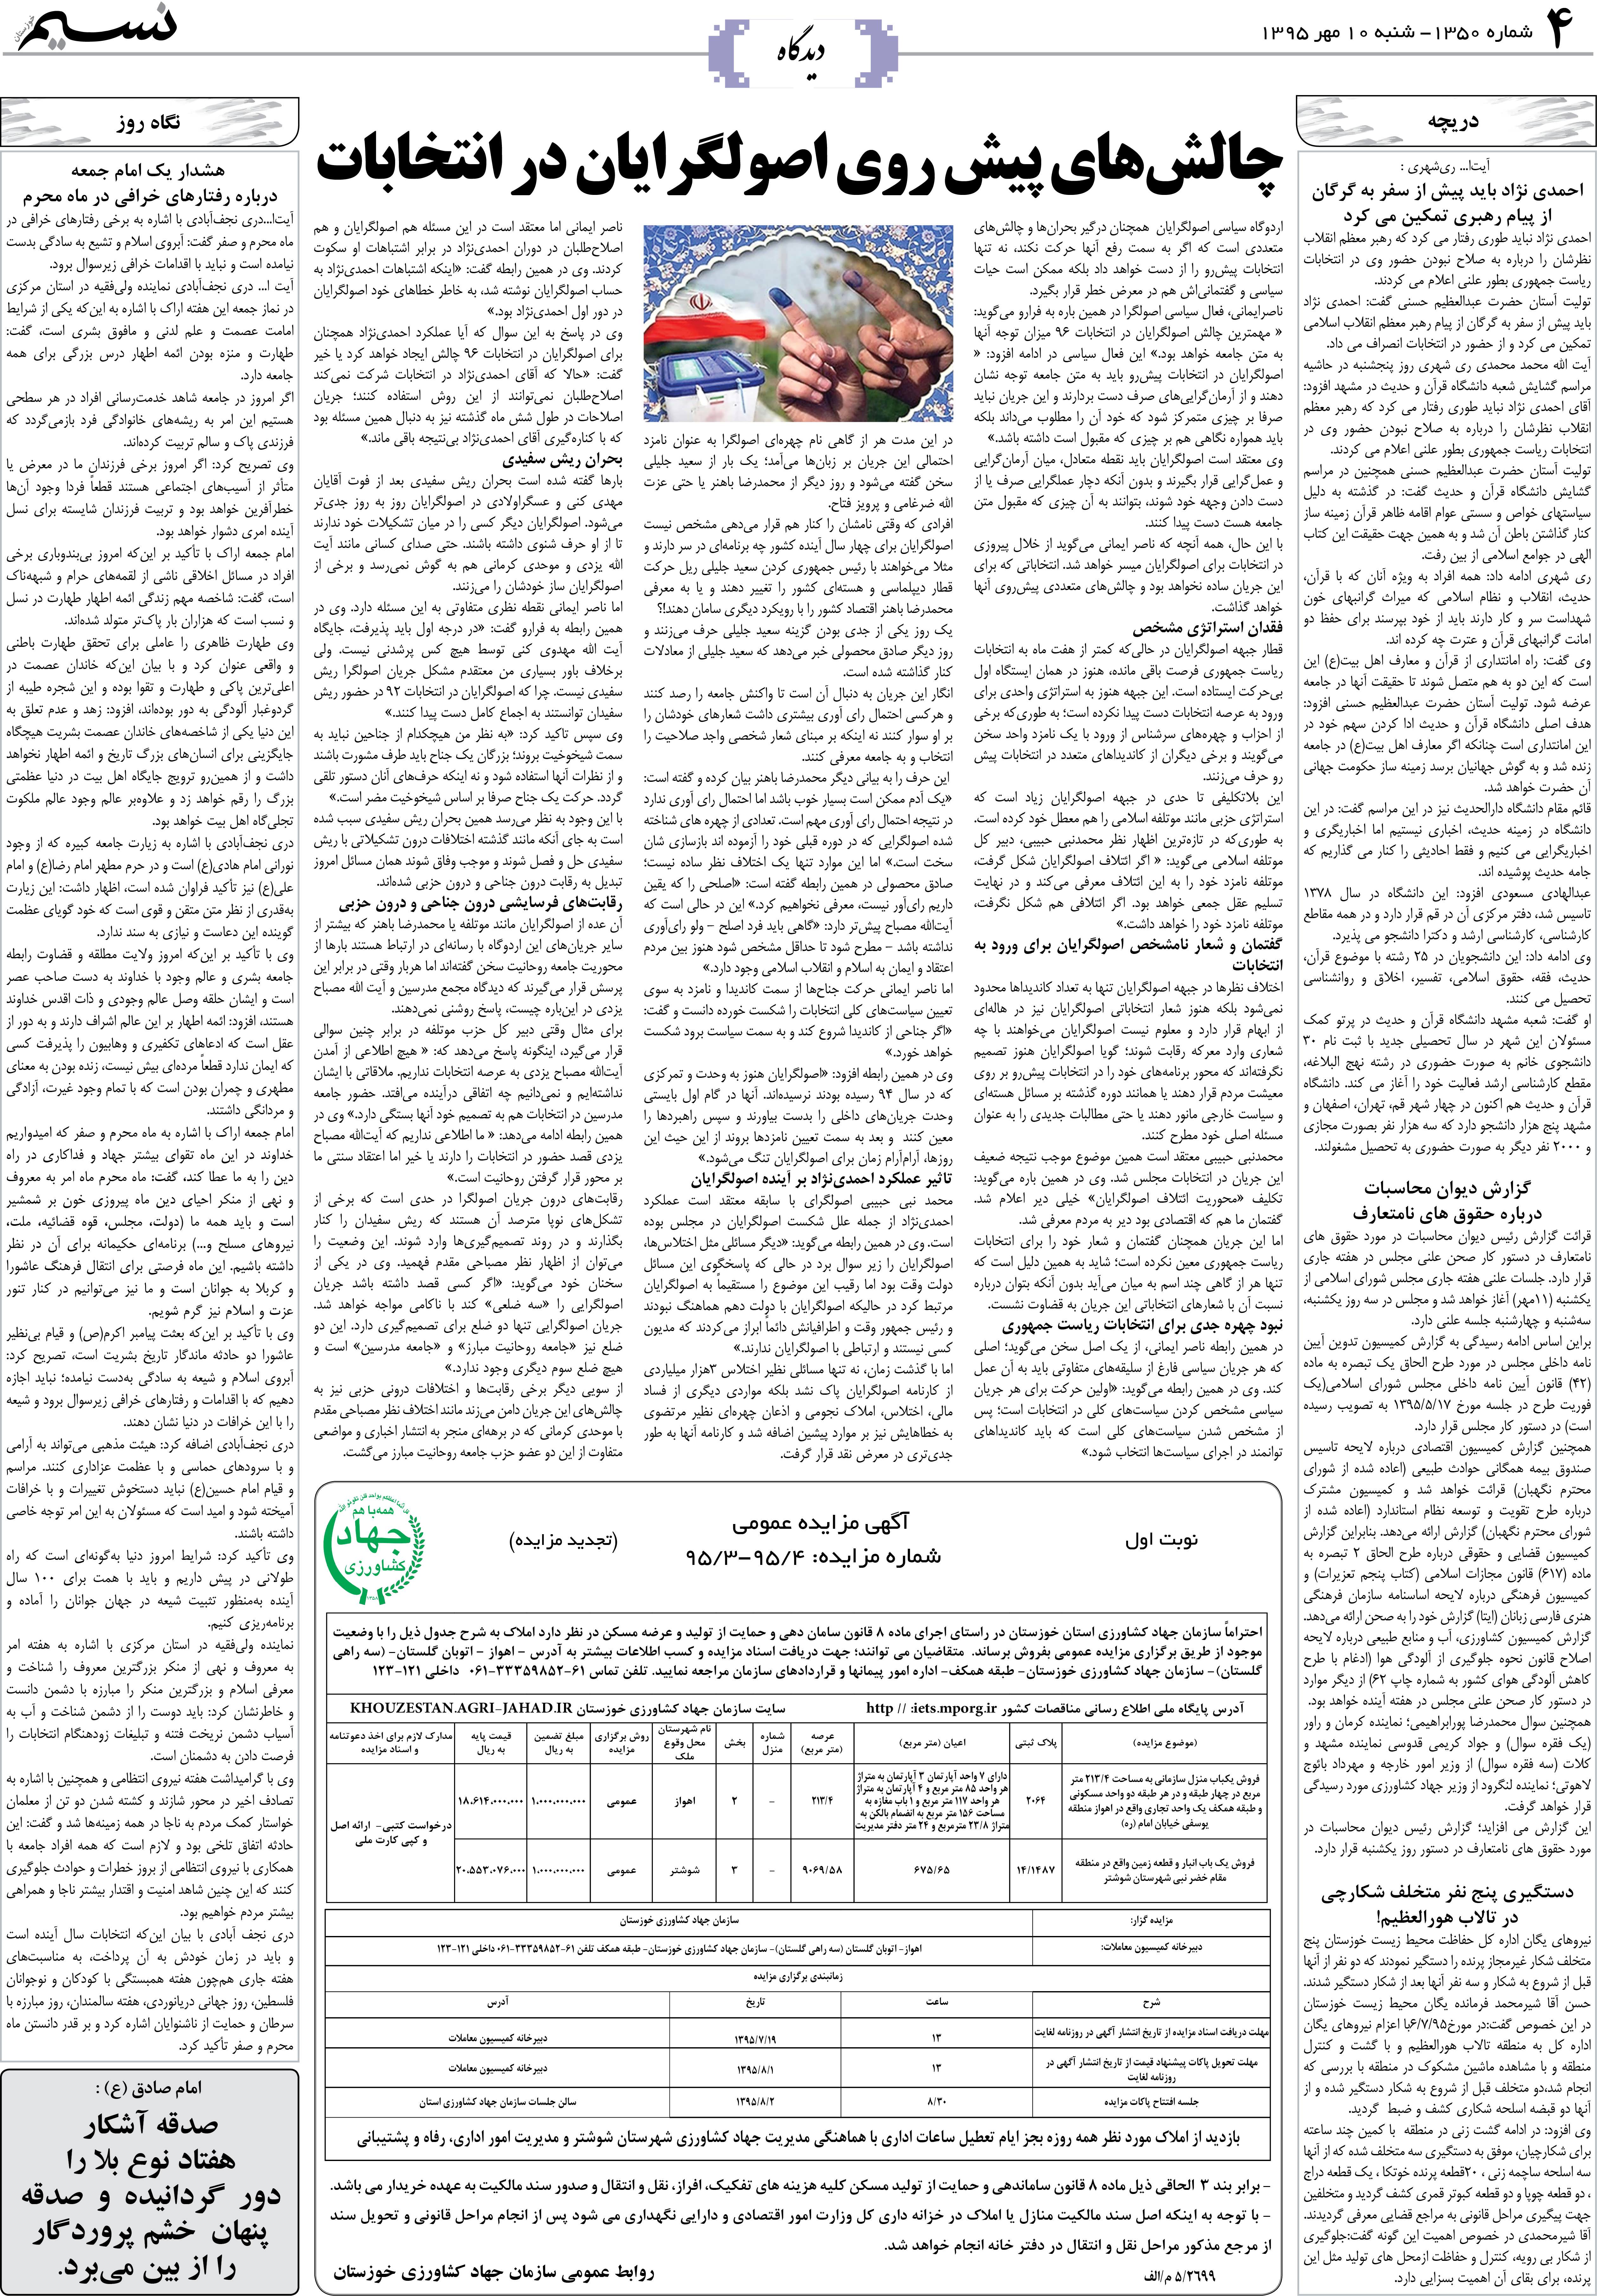 صفحه دیدگاه روزنامه نسیم شماره 1350